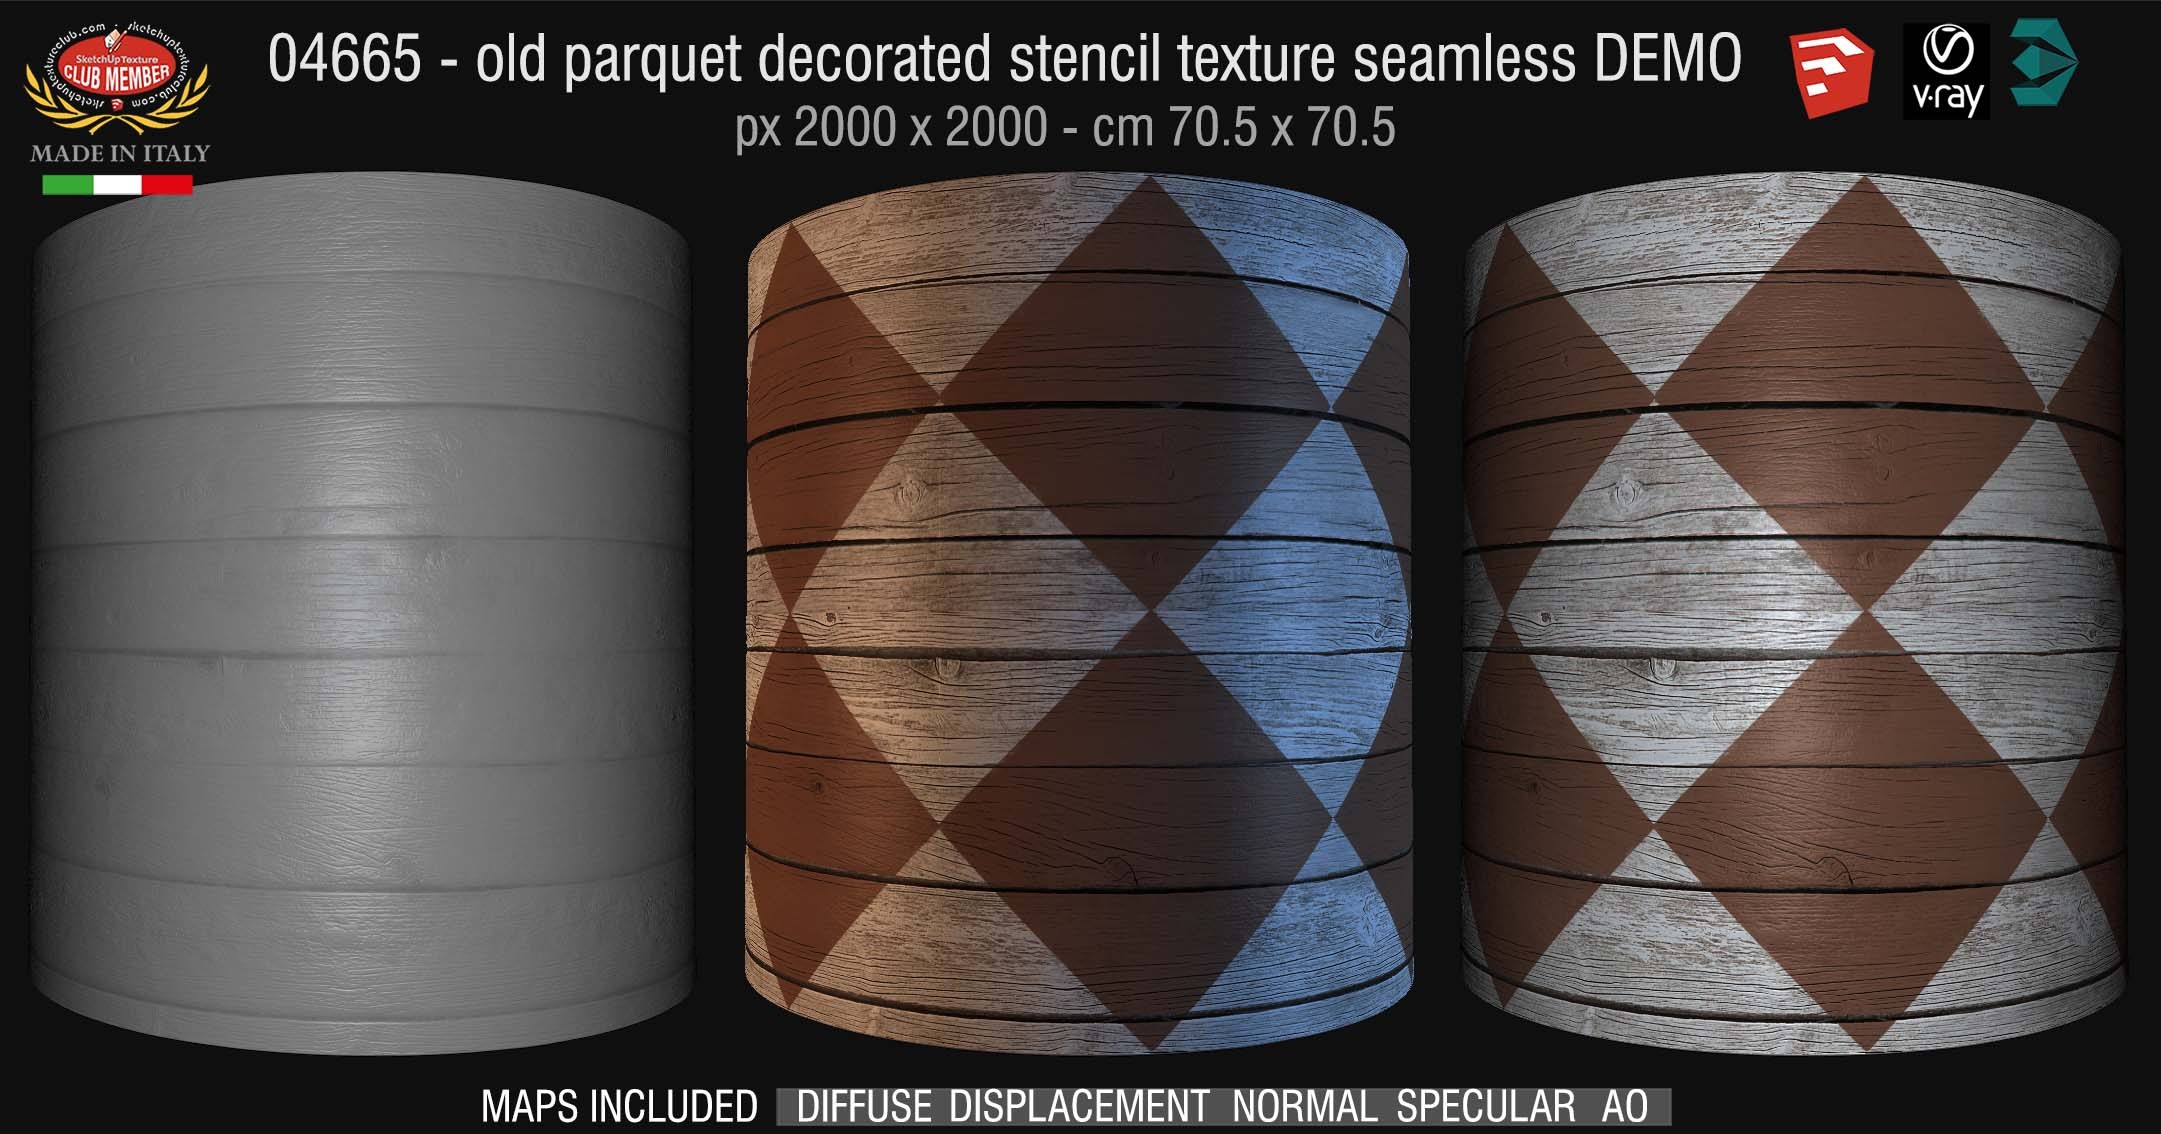 04665 HR Parquet decorated stencil texture seamless + maps DEMO